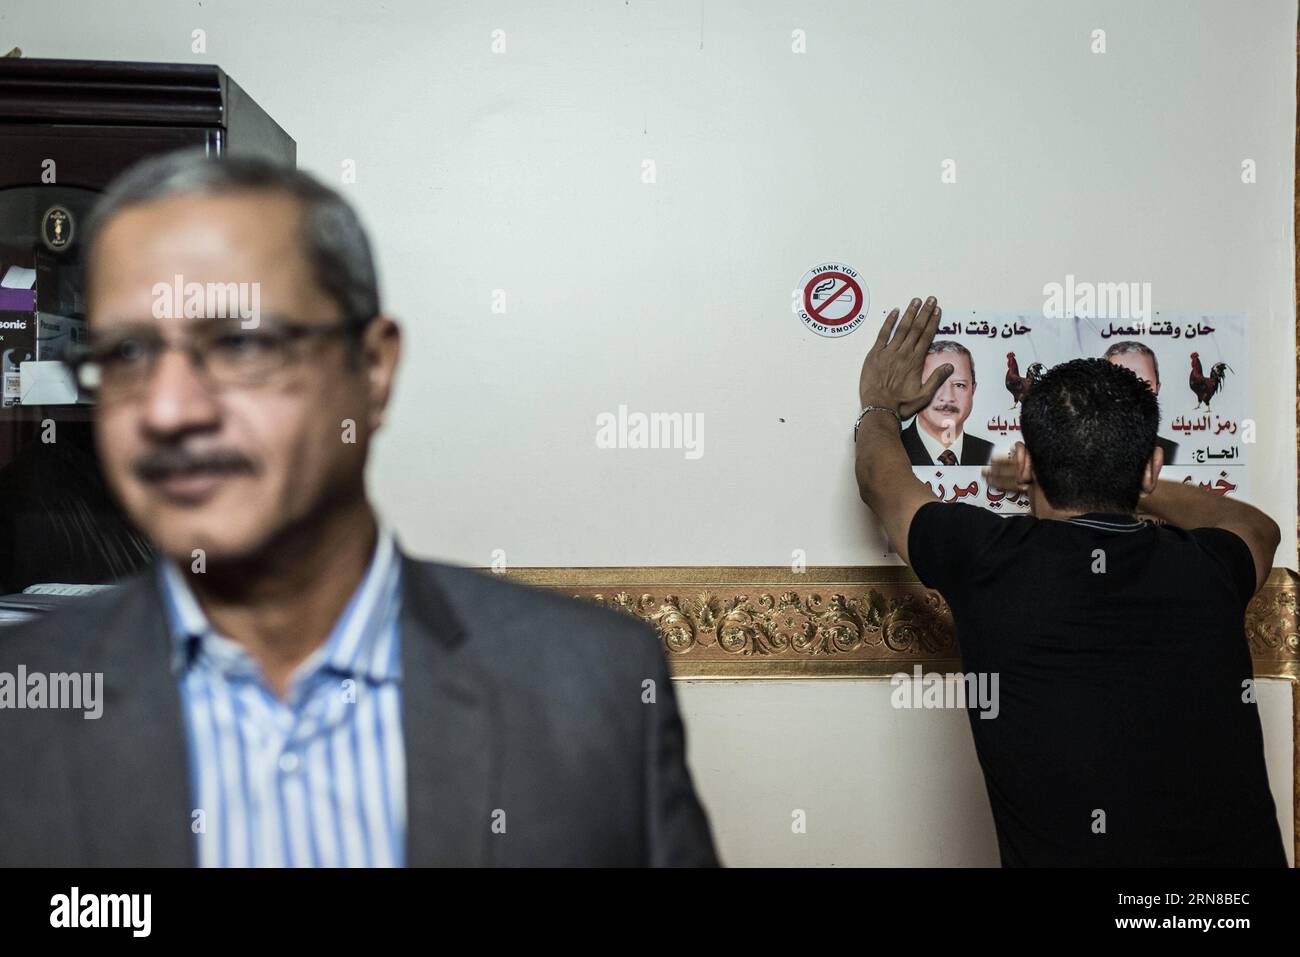 (151015) -- MINYA, 15. Oktober 2015 -- ein Assistent von Khairy Marzouk (L), einem unabhängigen Kandidaten für die anstehenden parlamentswahlen, bringt am 15. Oktober 2015 Poster an der Wand seines Büros im Stadtzentrum von El-Minya, Ägypten, auf. Die lang erwarteten Parlamentswahlen in Ägypten werden in zwei Phasen durchgeführt, die sich auf die 27 Provinzen des Landes erstrecken. Die erste Phase, die 14 Provinzen umfasst, findet am 18. Und 19. Oktober statt, die zweite Phase, die die übrigen 13 Provinzen am 22. Und 23. November umfasst. ) ÄGYPTEN-MINYA-PARLAMENT-WAHL PanxChaoyue PUBLICATIONxNOTxINxCHN Minya OKT 15 2015 zum Assistenten von Khairy Marzo Stockfoto